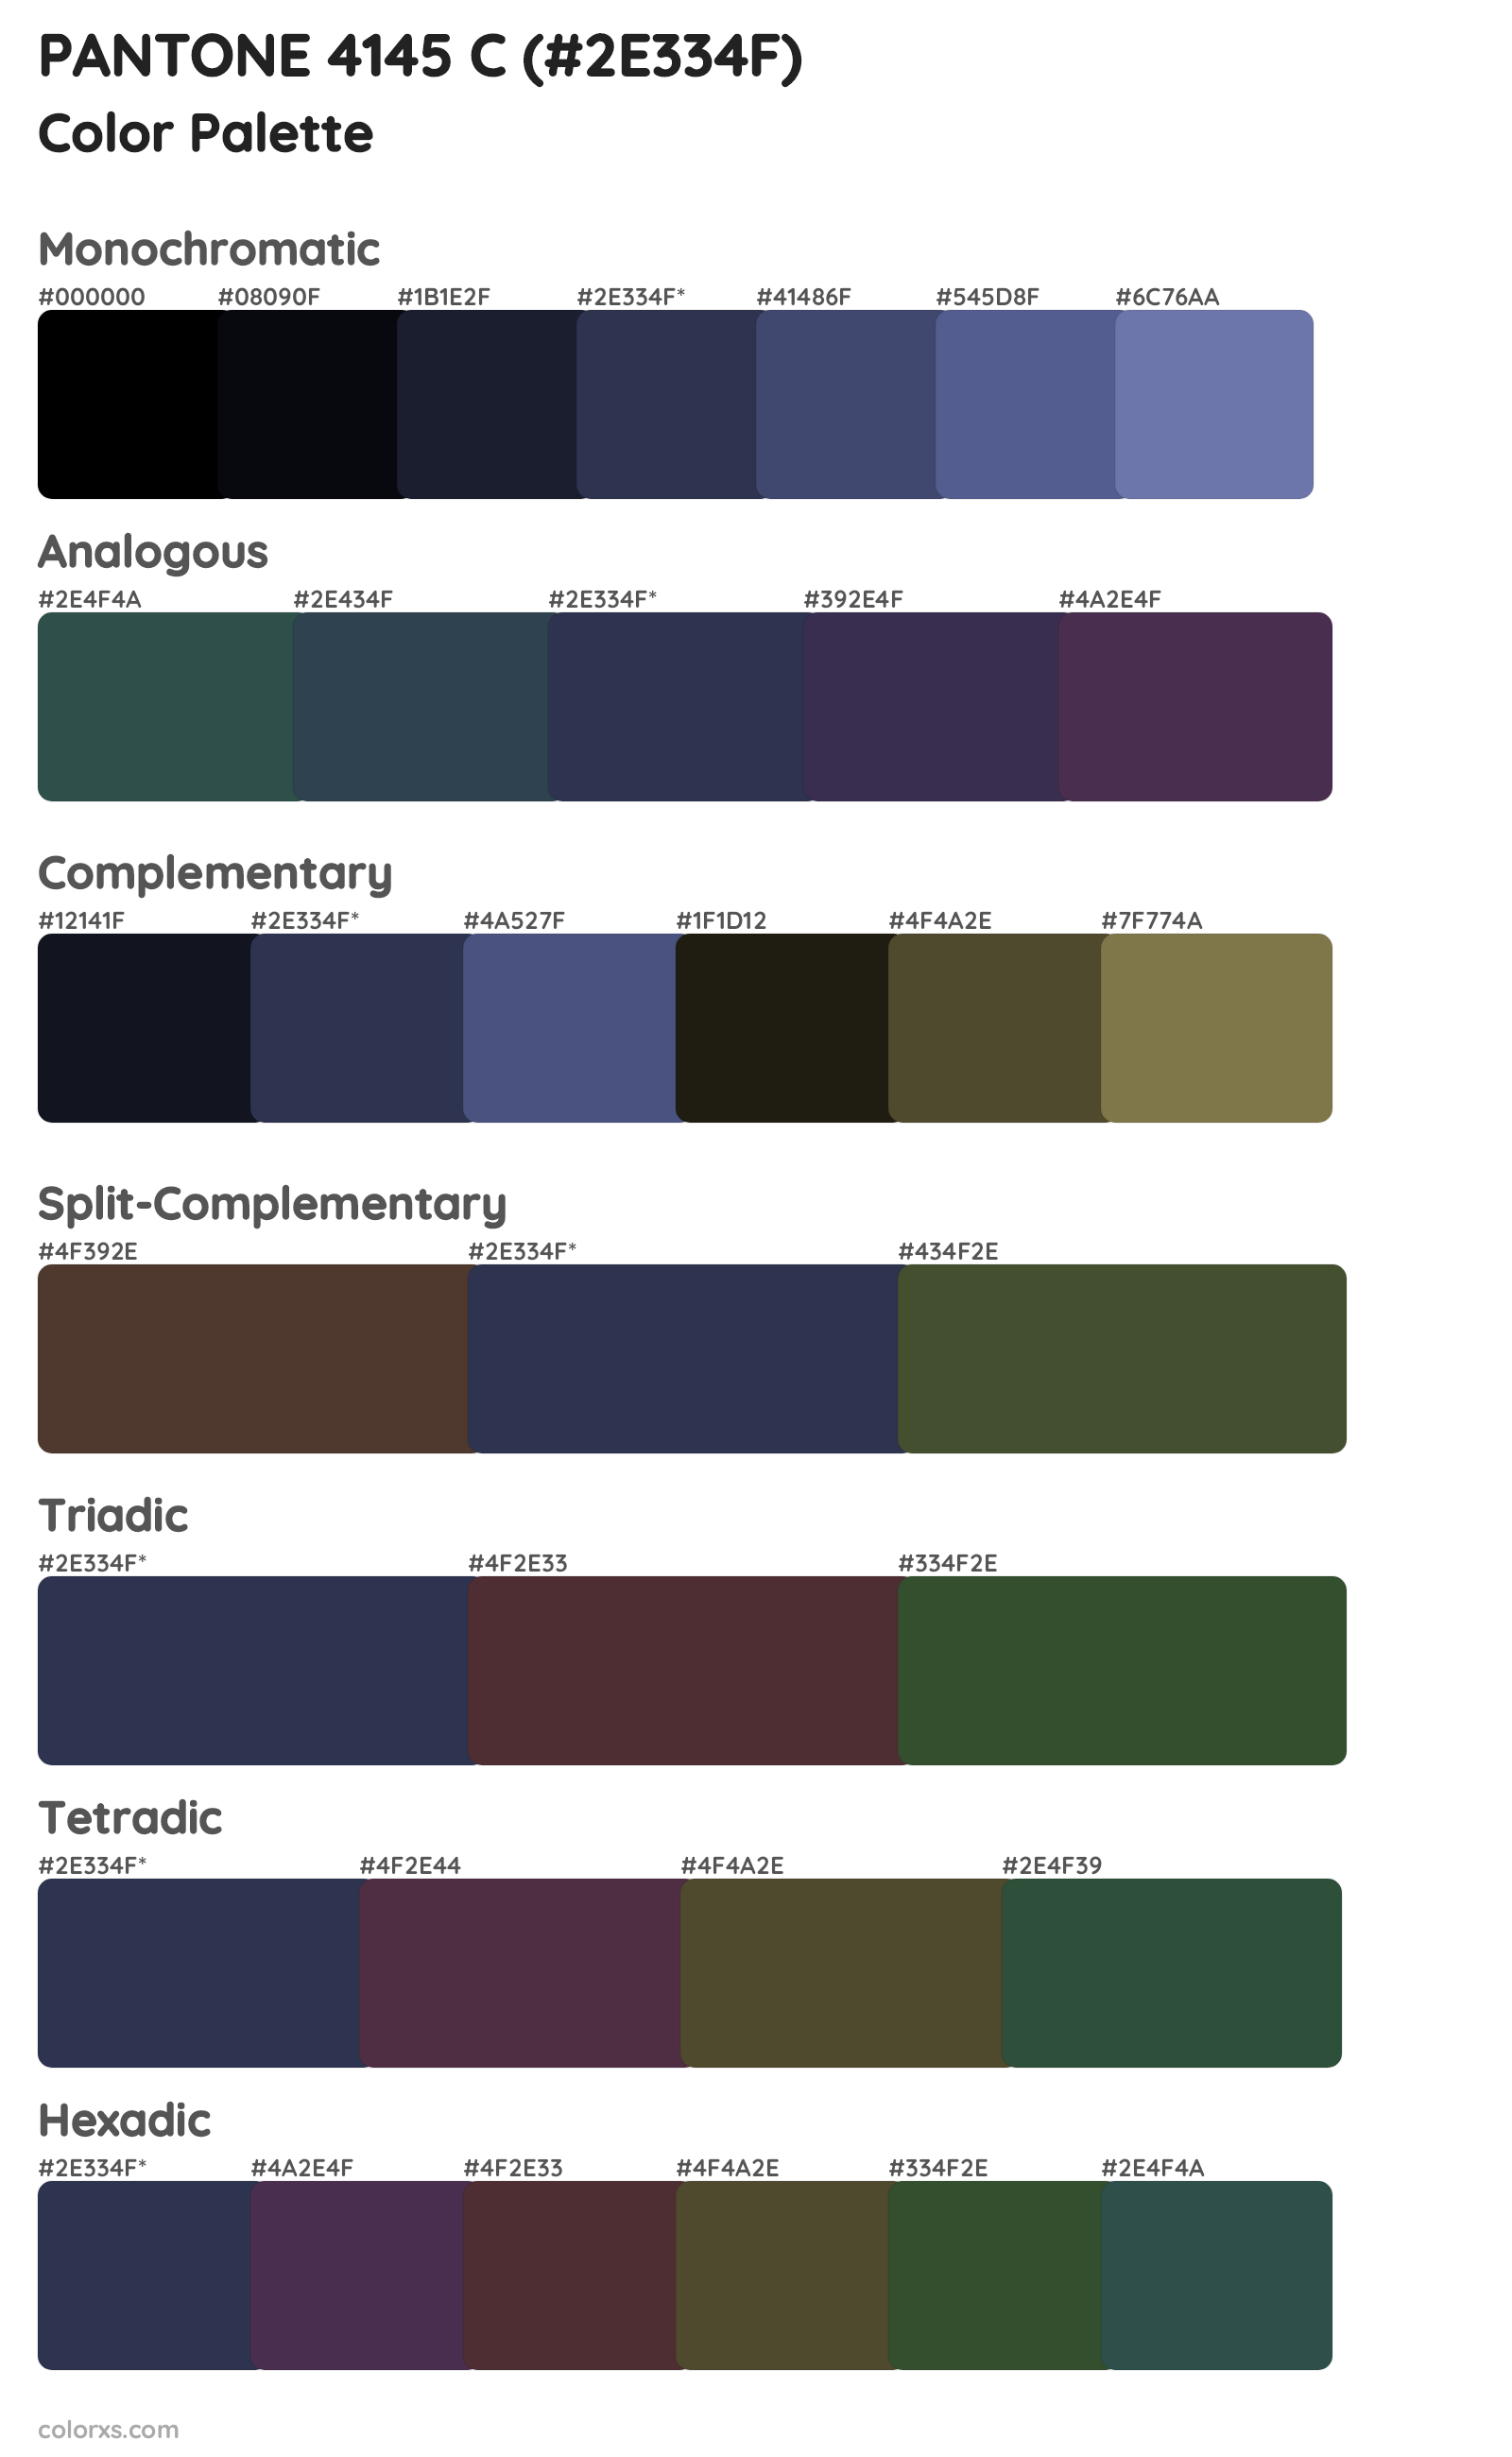 PANTONE 4145 C Color Scheme Palettes